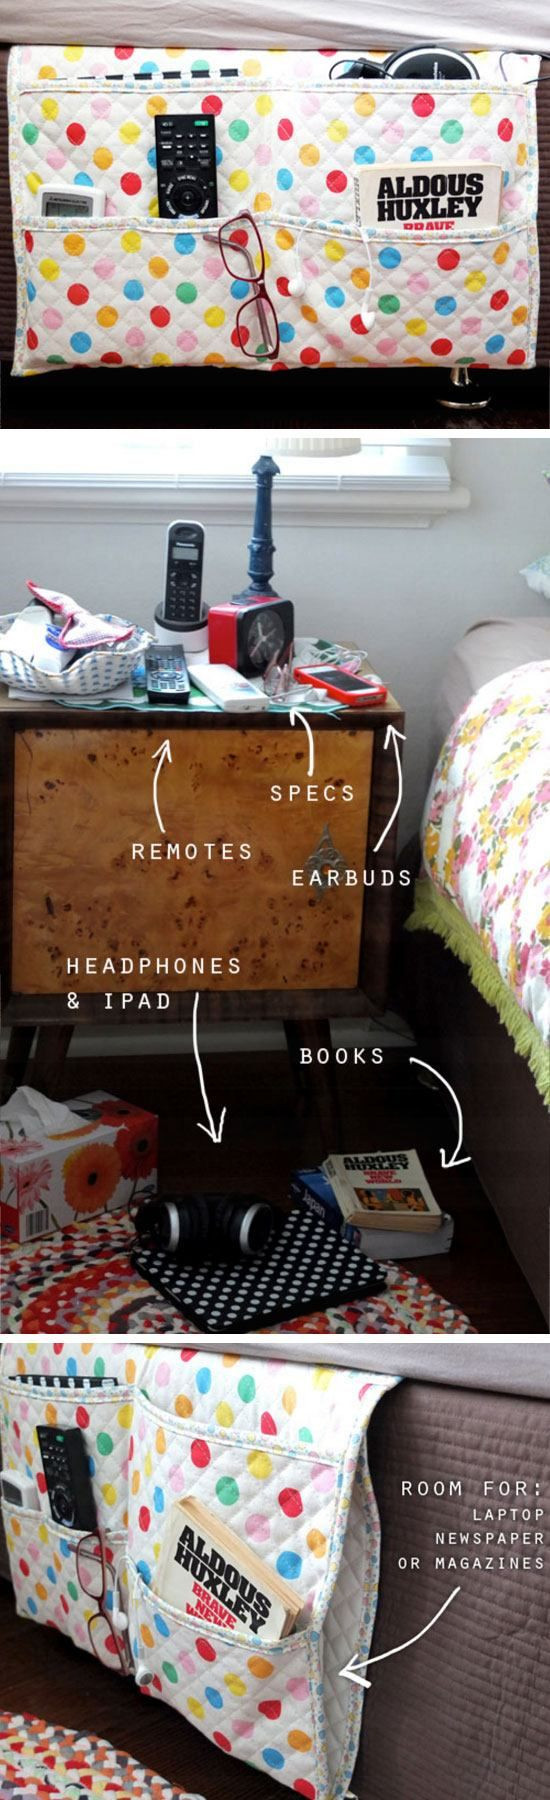 DIY Room Organization For Teens
 Bedside Gad Caddy Organizer